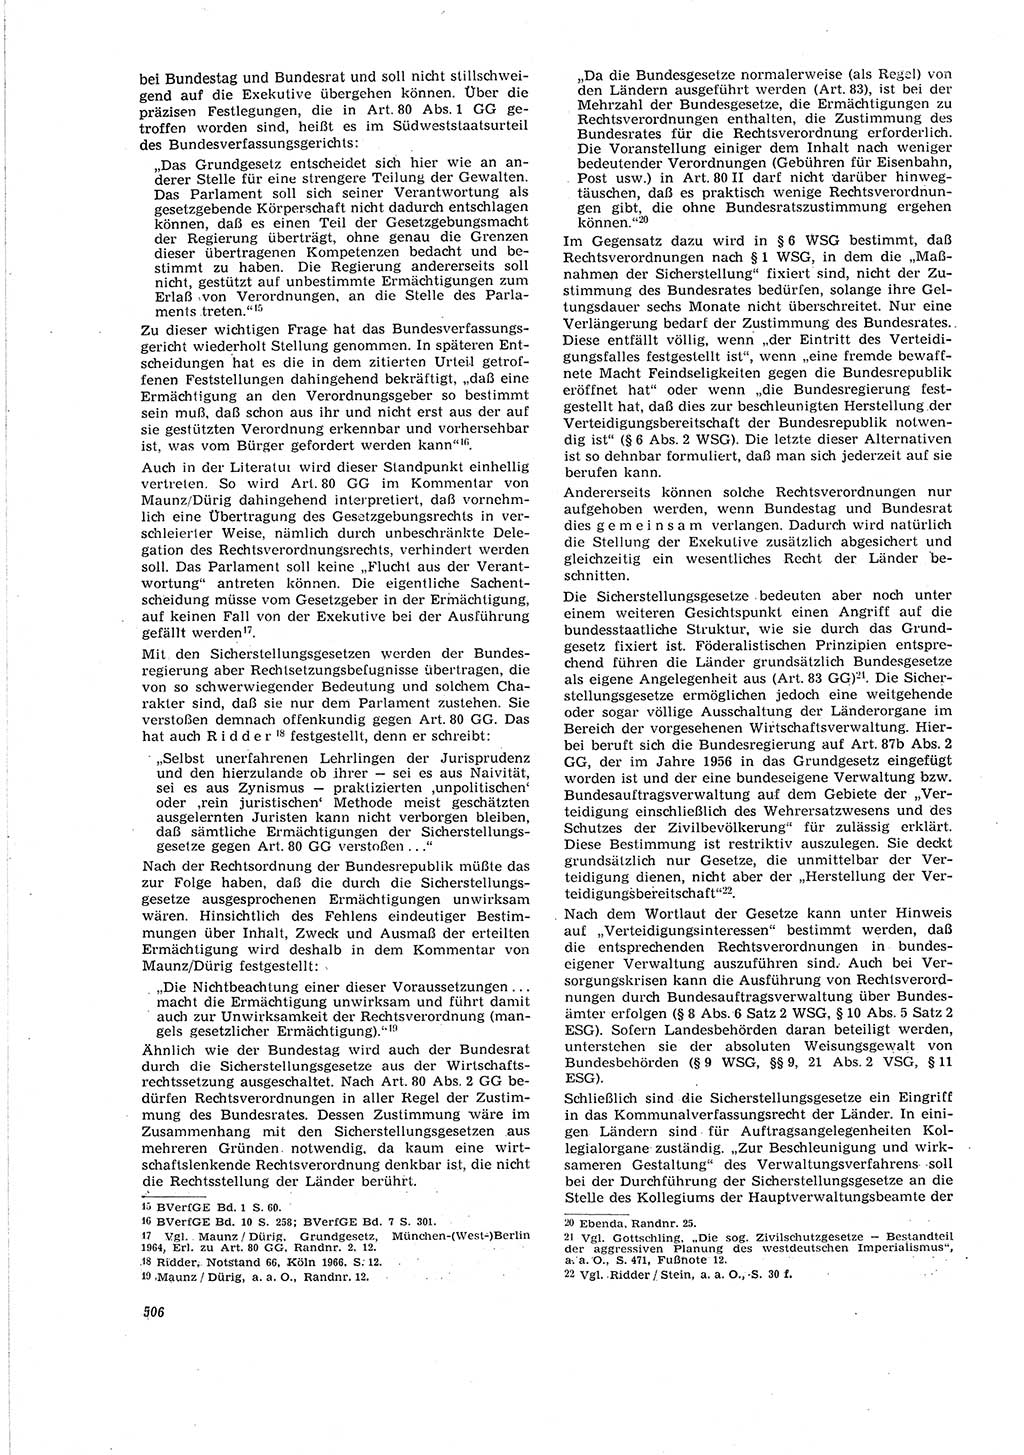 Neue Justiz (NJ), Zeitschrift für Recht und Rechtswissenschaft [Deutsche Demokratische Republik (DDR)], 20. Jahrgang 1966, Seite 506 (NJ DDR 1966, S. 506)